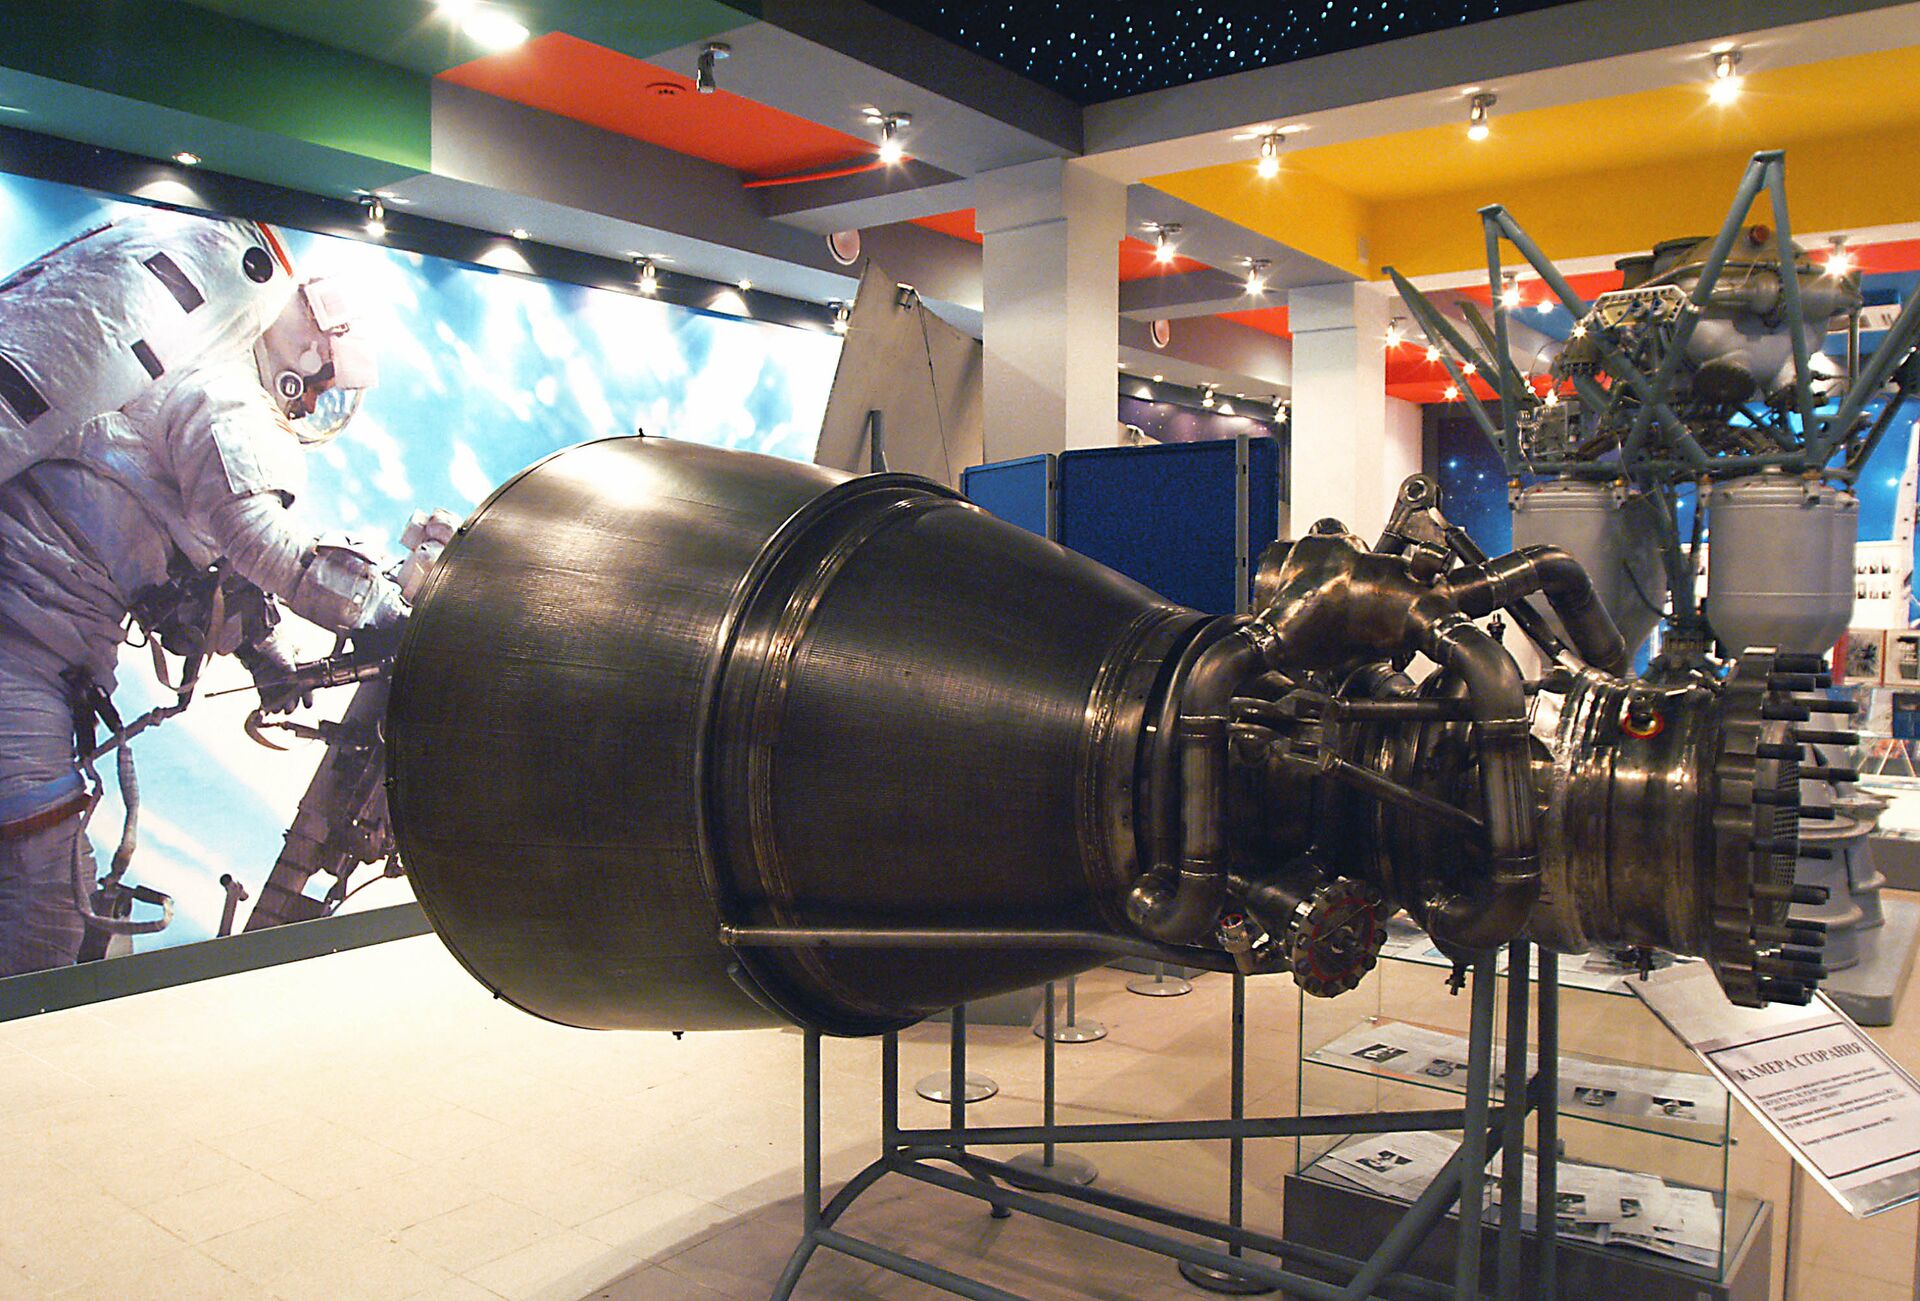 Камера сгорания. Предназначена для жидкостных двигателей (ЖРД) РД-171 М, РД - 171 М, РД -191, используемых вдвигателях РД 180, предназначенных для американских ракетоносителей Атлас - ПРАЙМ, 1920, 08.04.2021